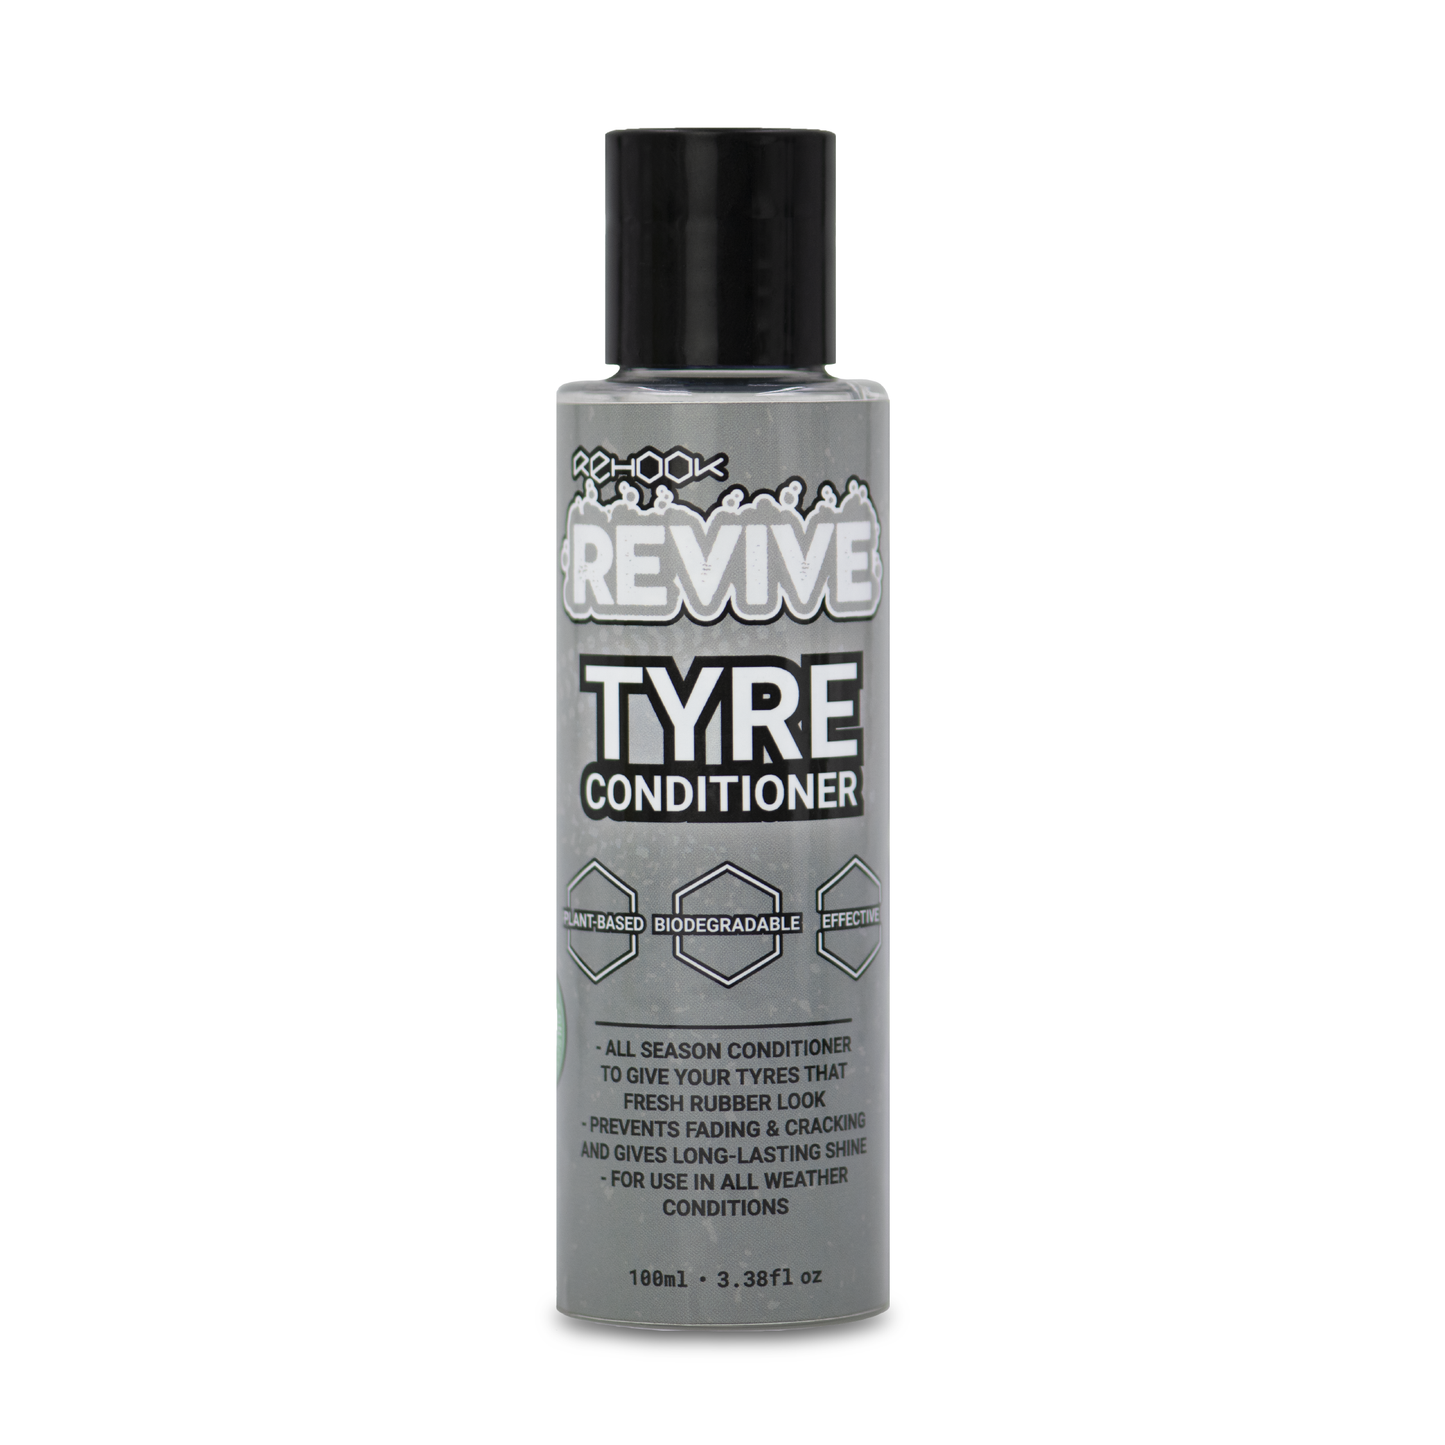 Revive Make-It-Shine Care Kit